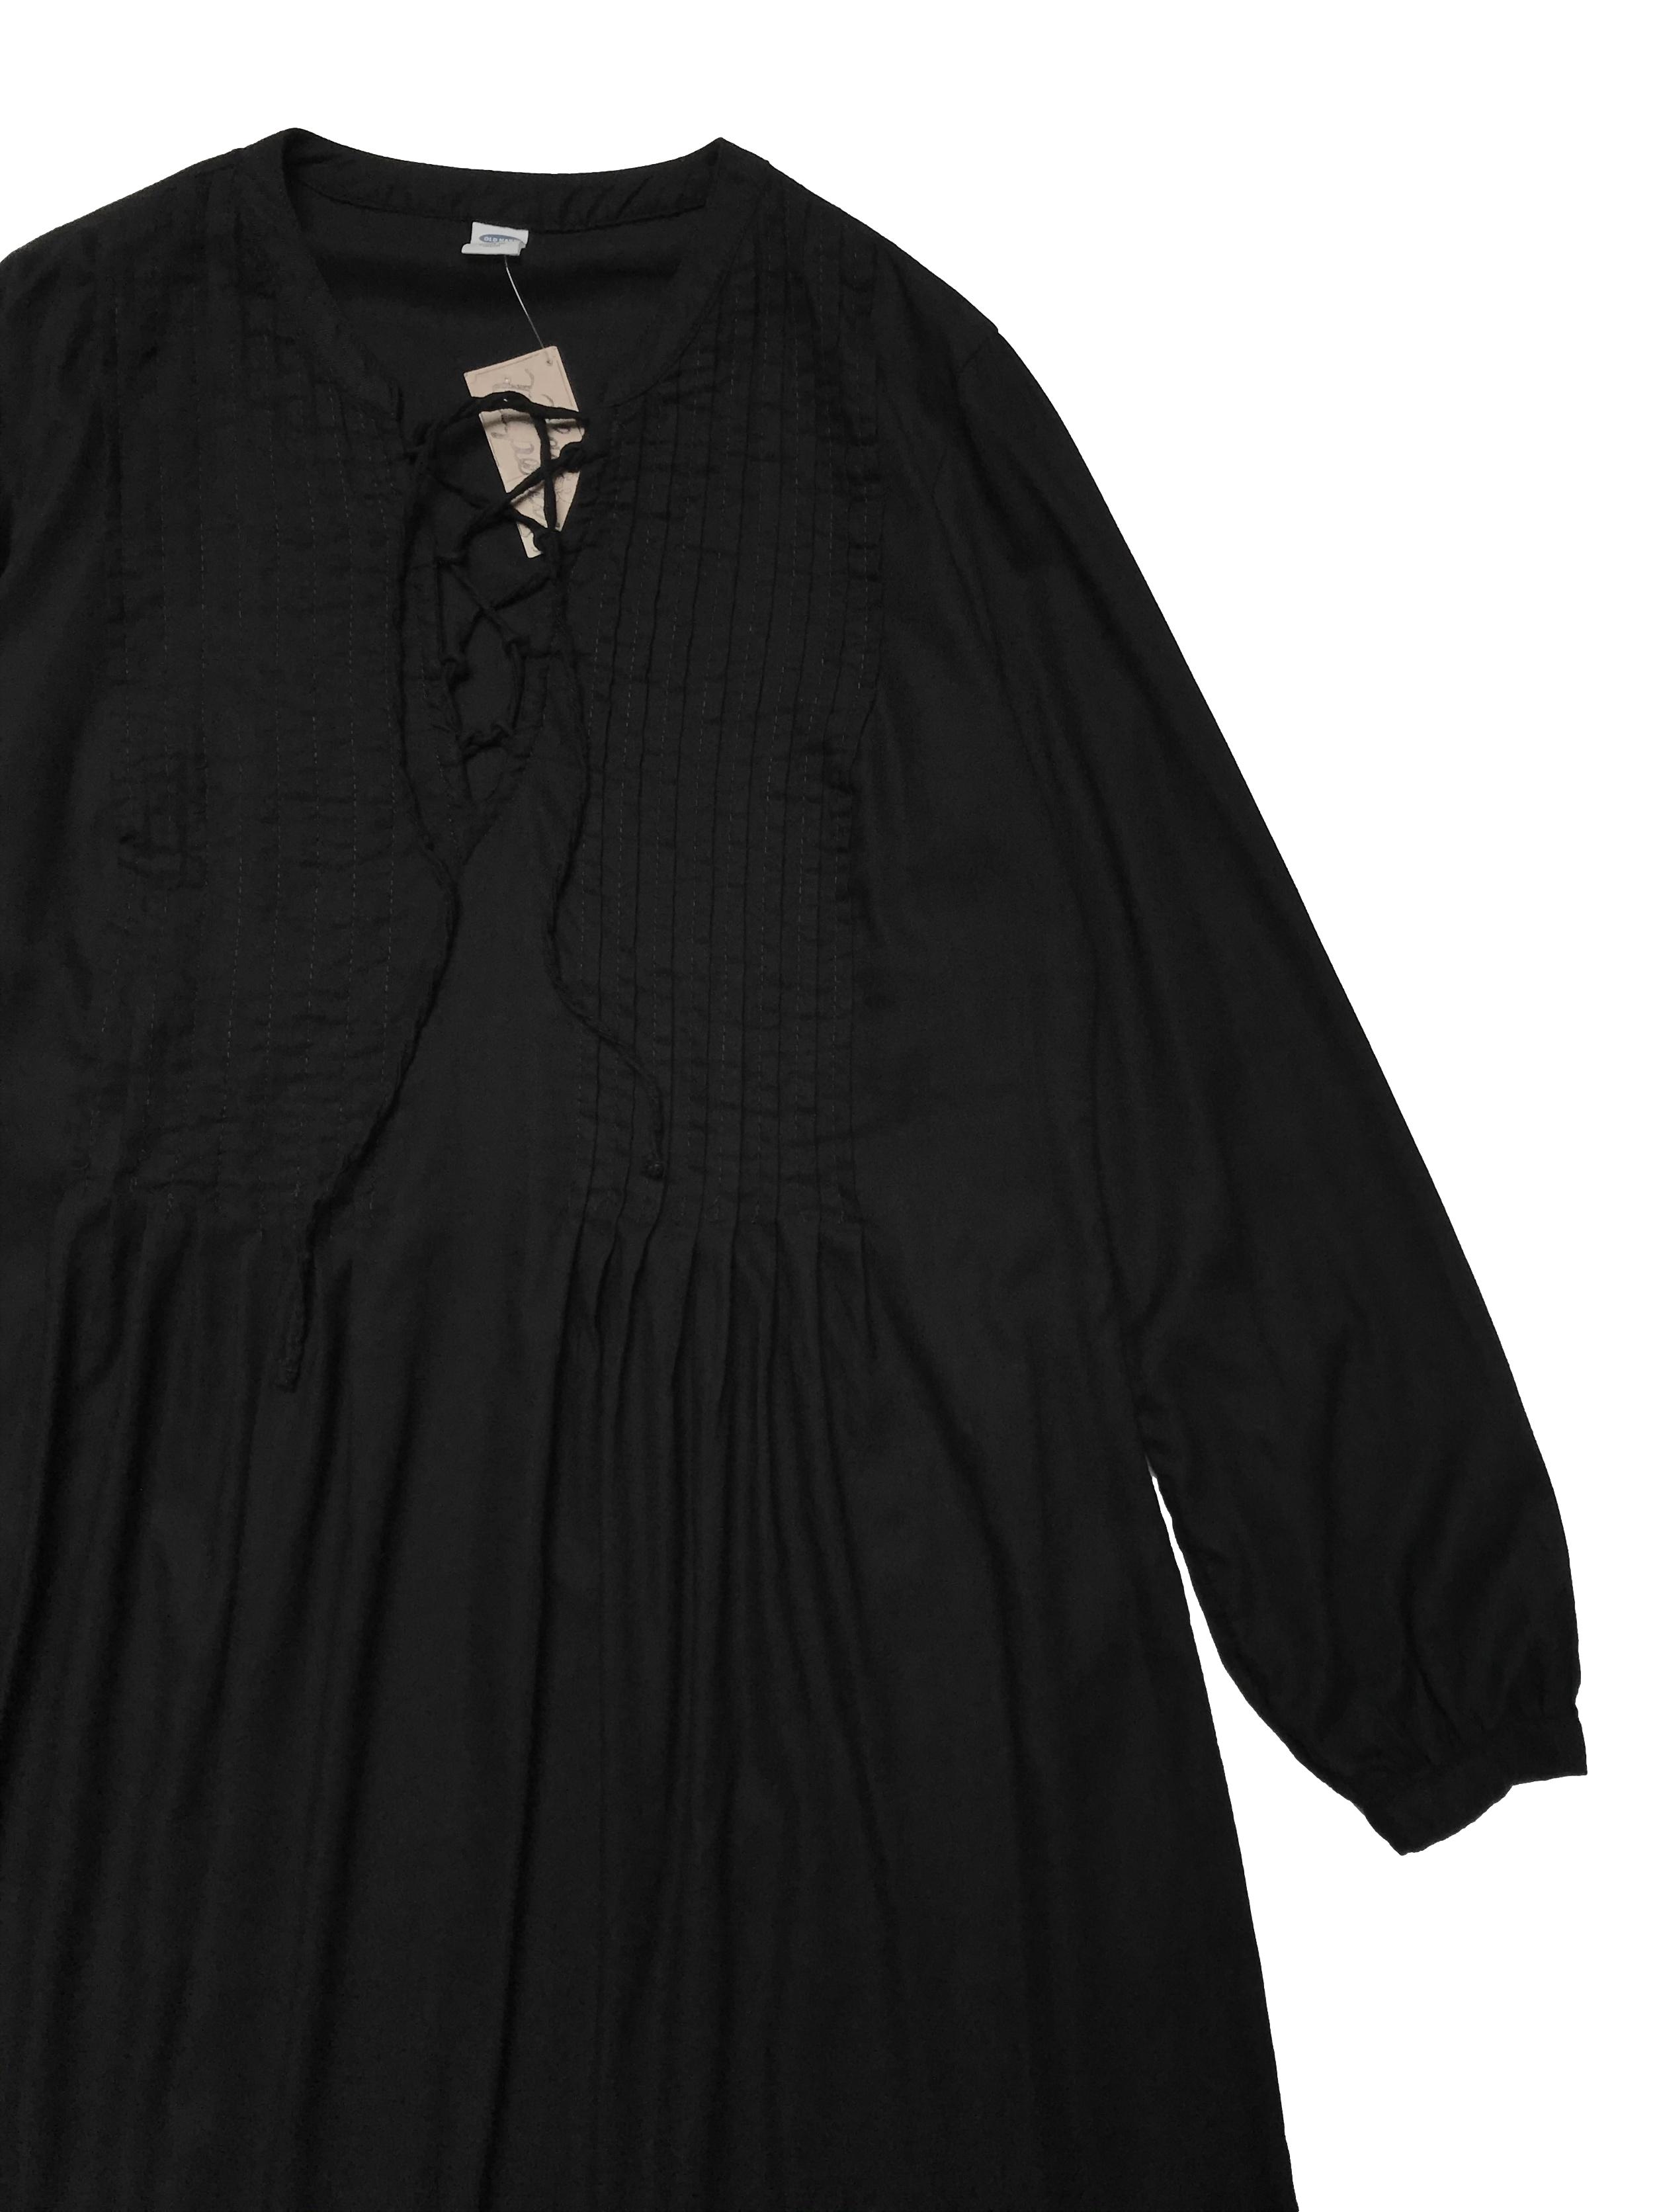 Vestido Old Navy de algodón y rayón negro, corte oversize, pliegues en parte superior y pasador cruzado en el  pecho. Busto 100cm Largo 85cm. Precio original S/ 169